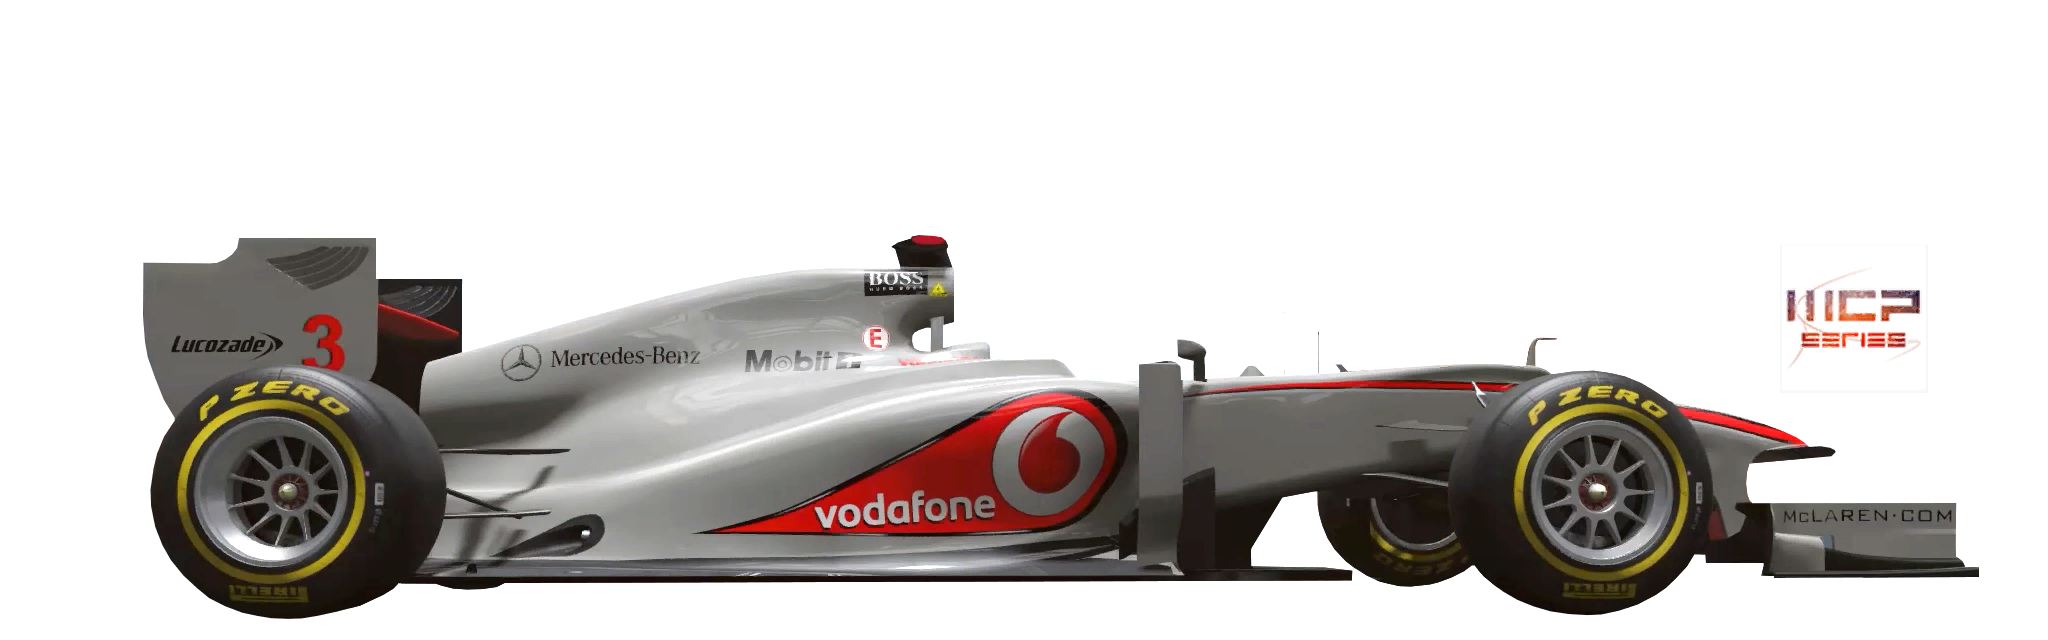 McLaren03p.png